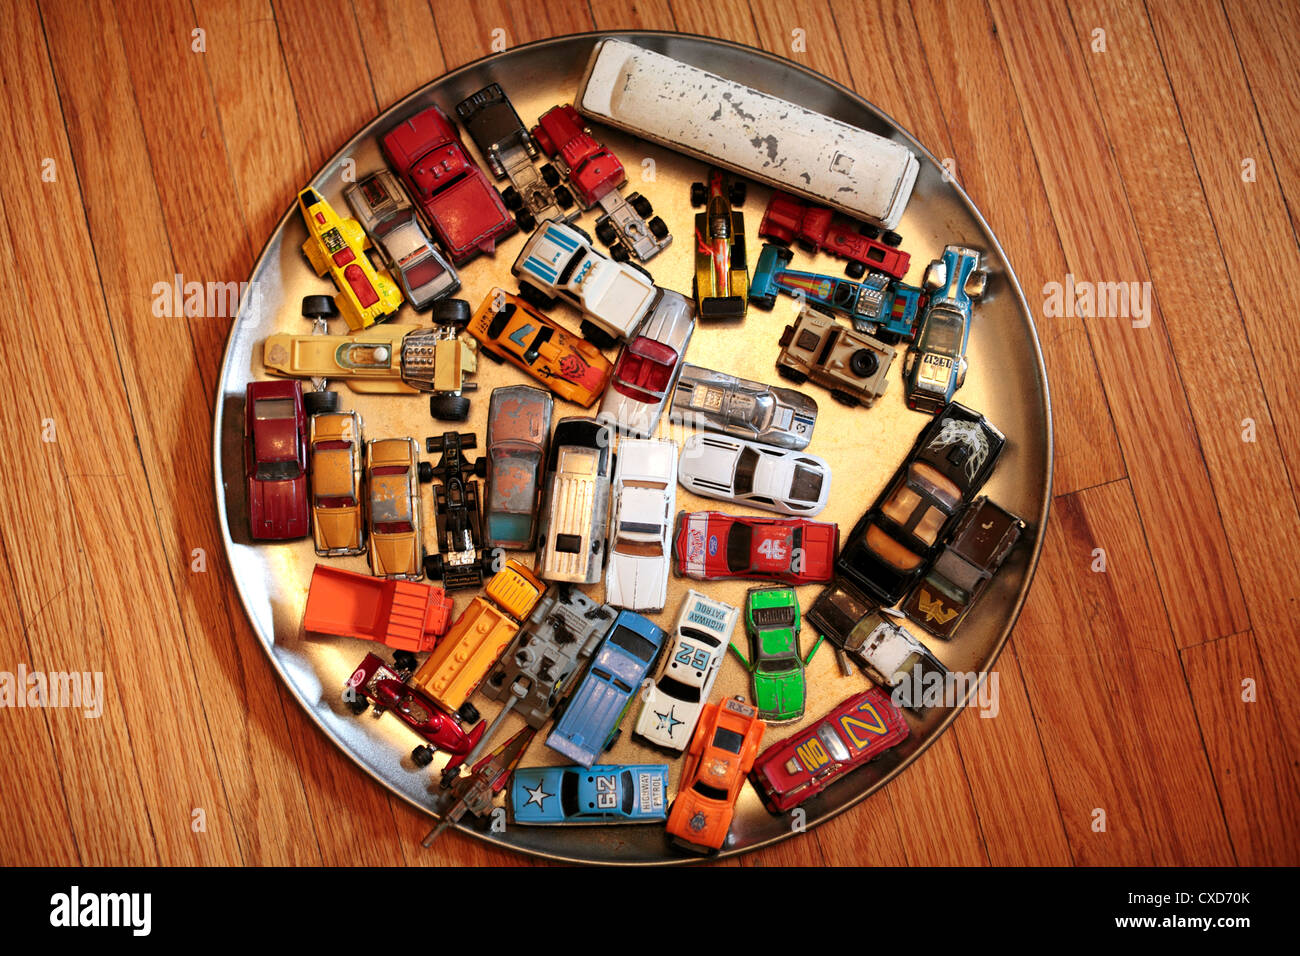 Sammlung von Alu-Druckguss Spielzeug Fahrzeuge. Stockfoto